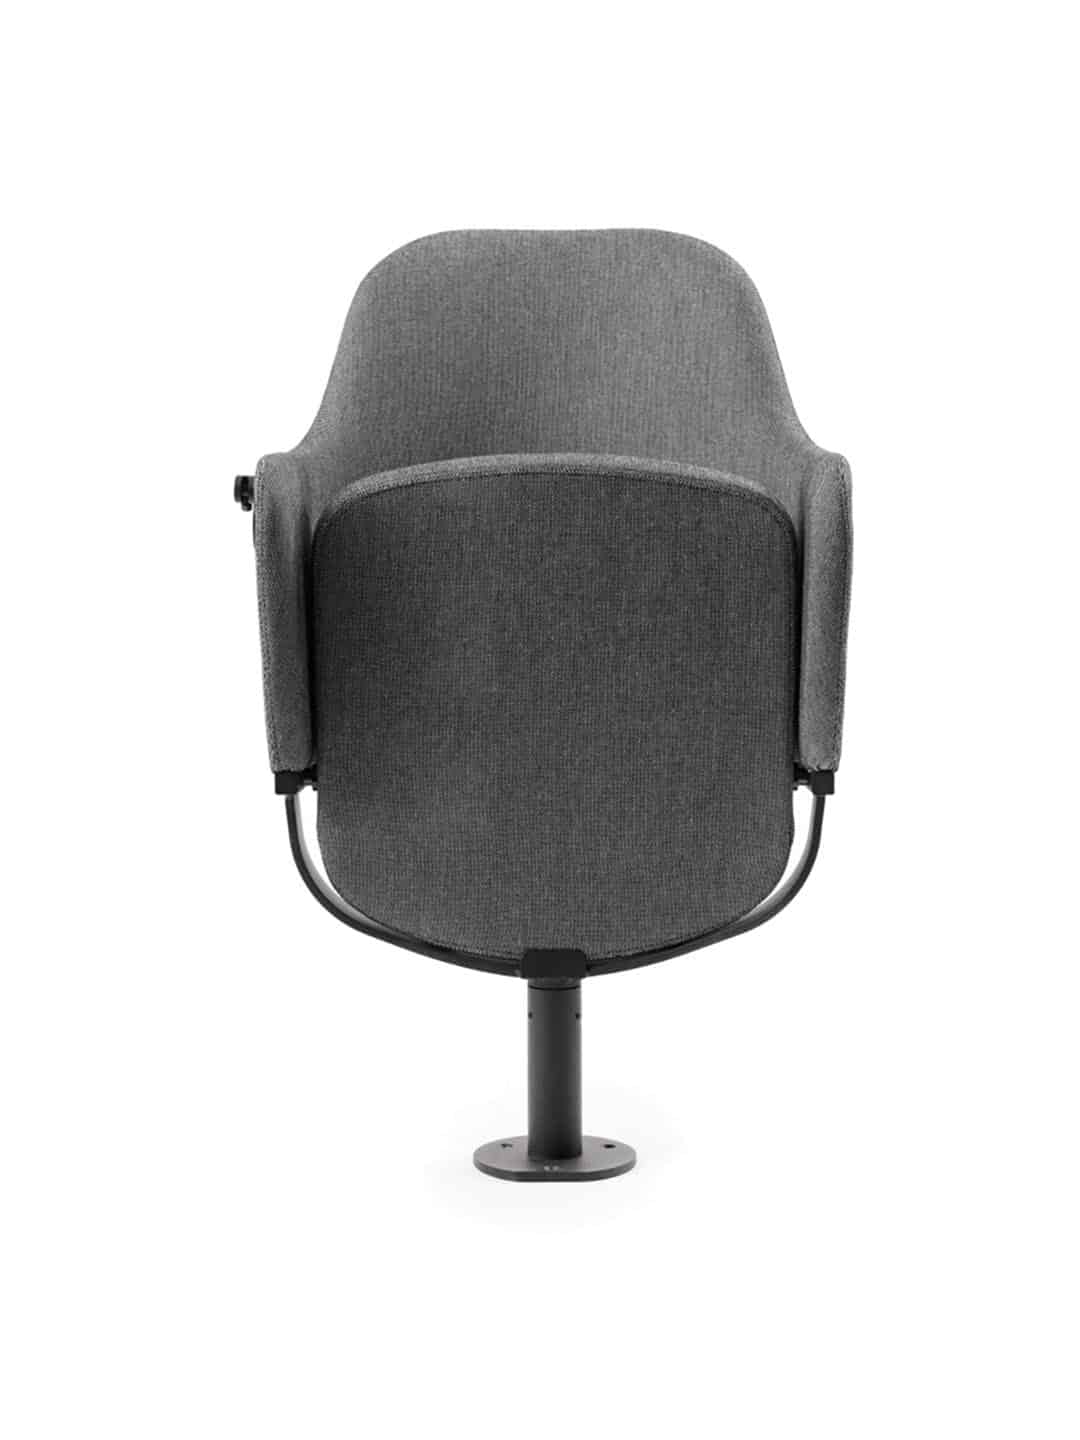 Элегантное кресло для зрителей Garsnas Zen Auditorium серого цвета